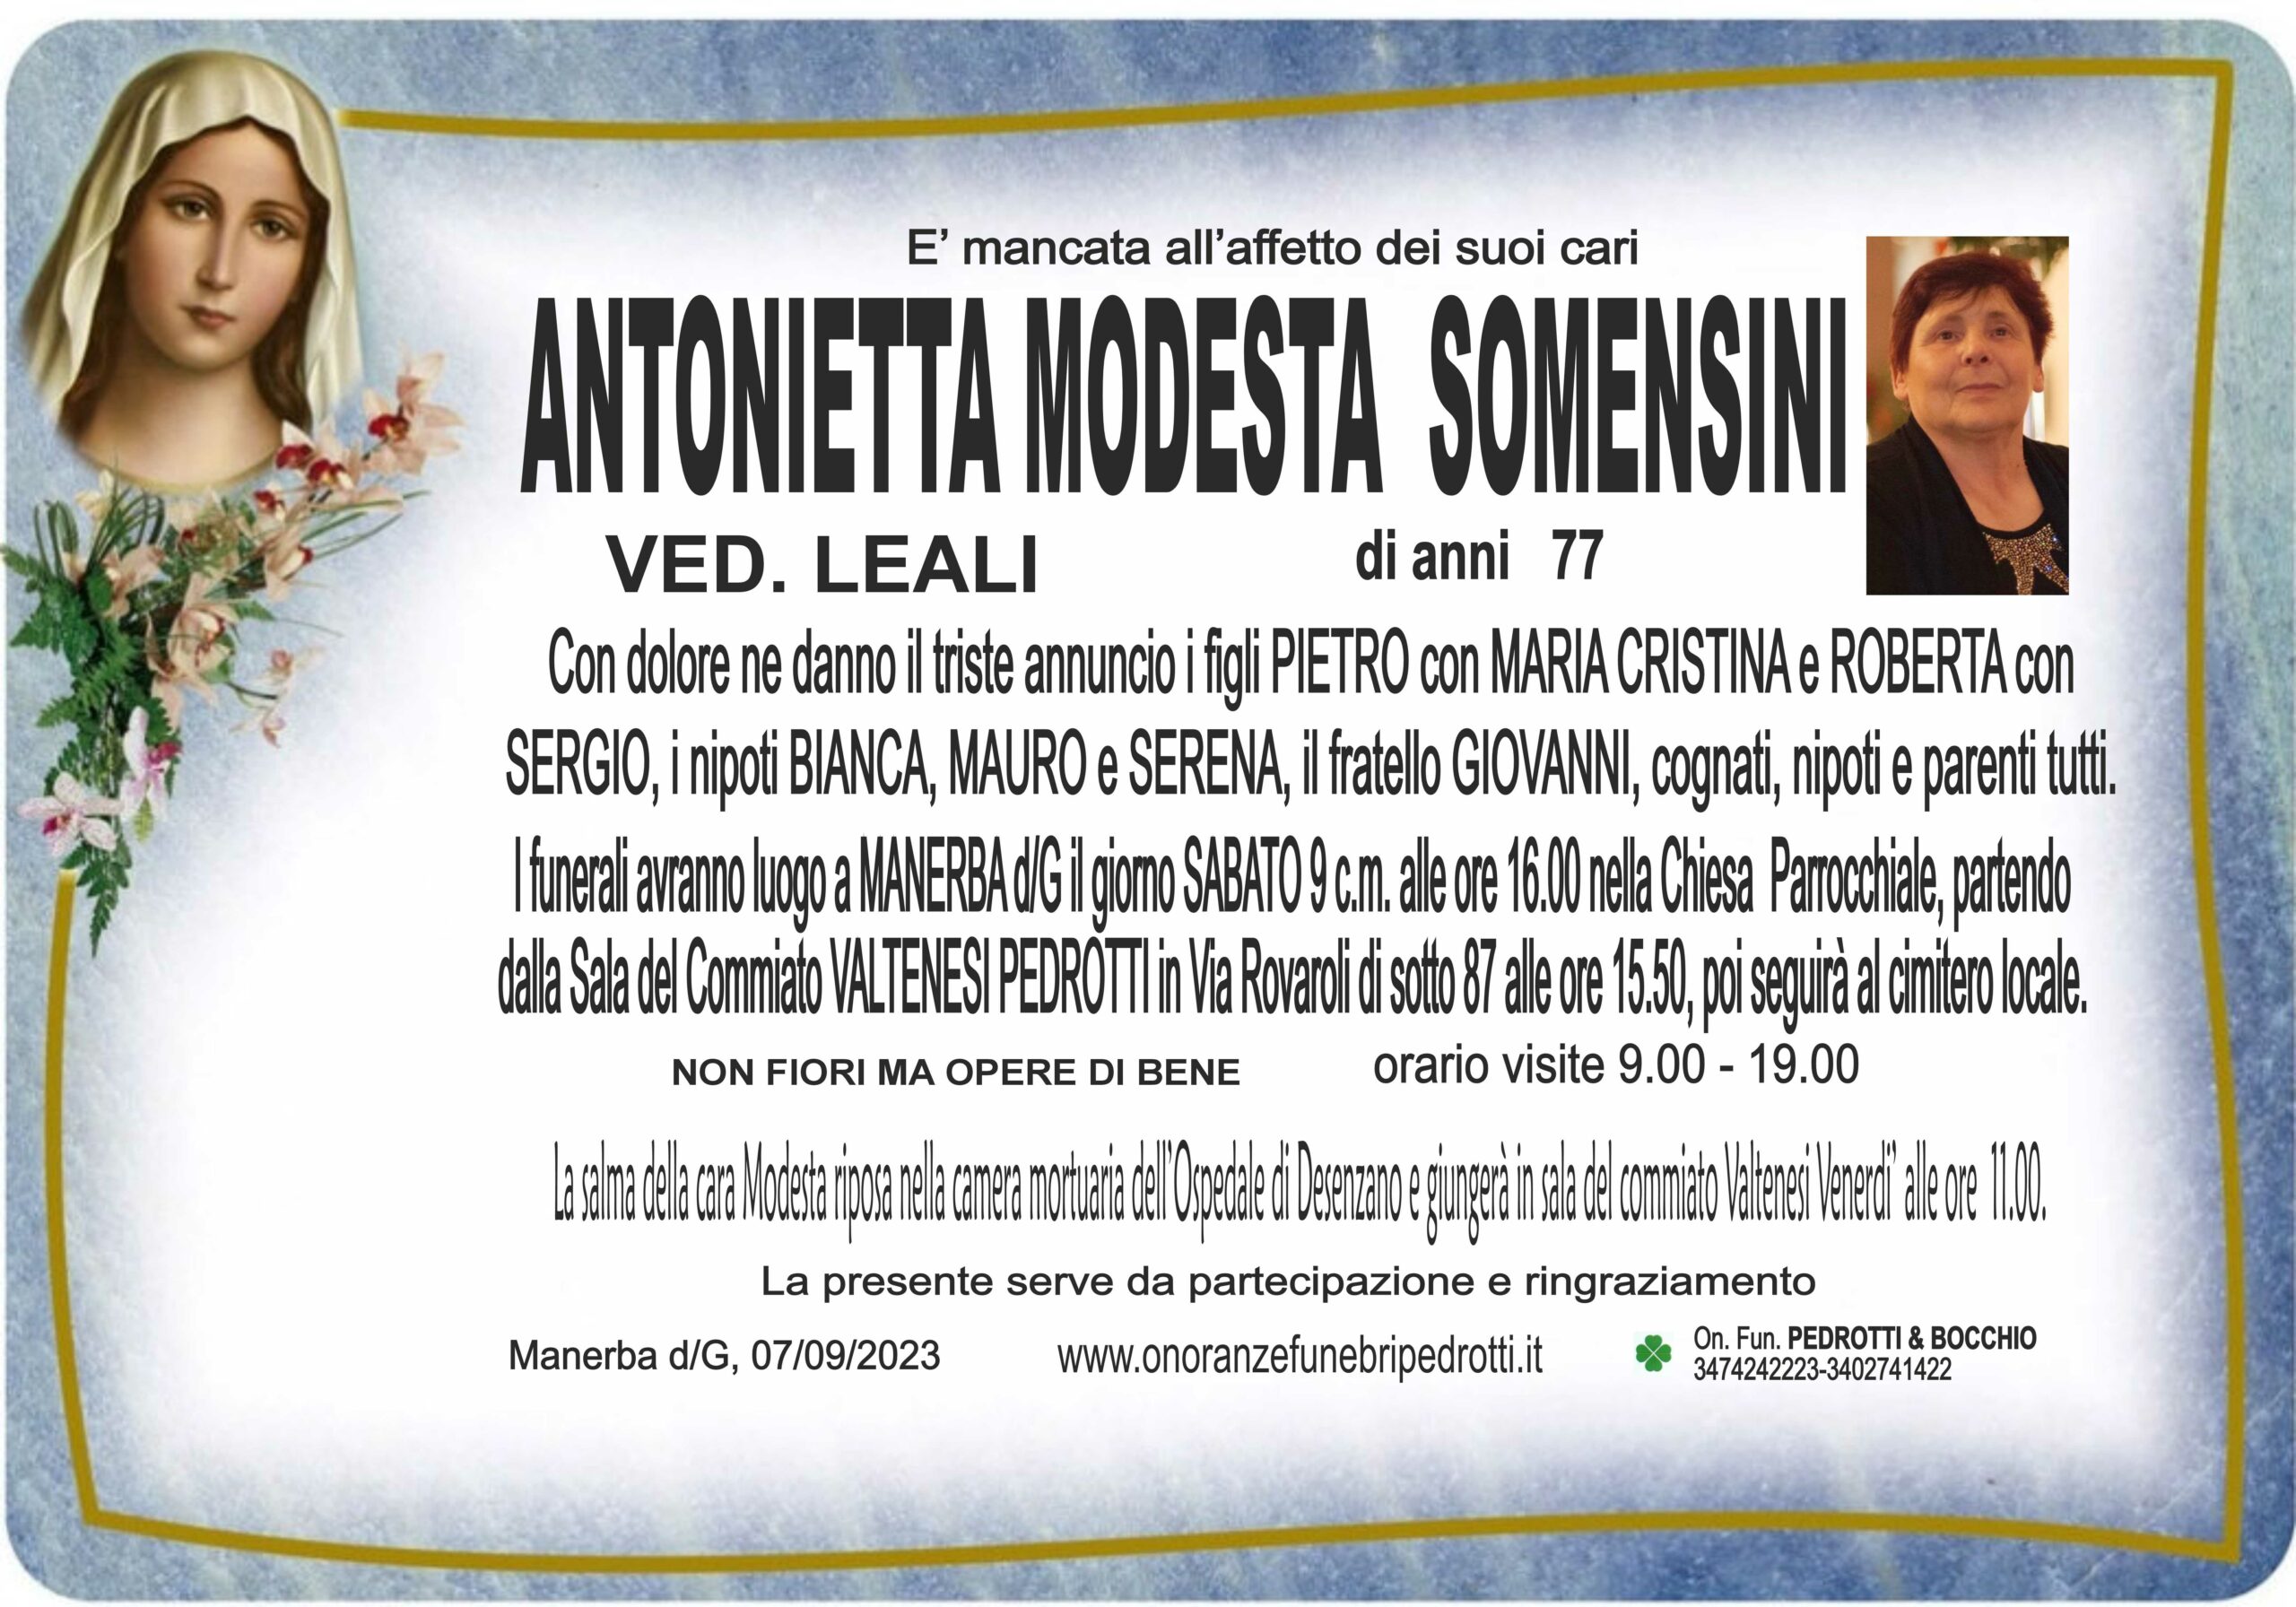 Al momento stai visualizzando Somensini Antonietta Modesta